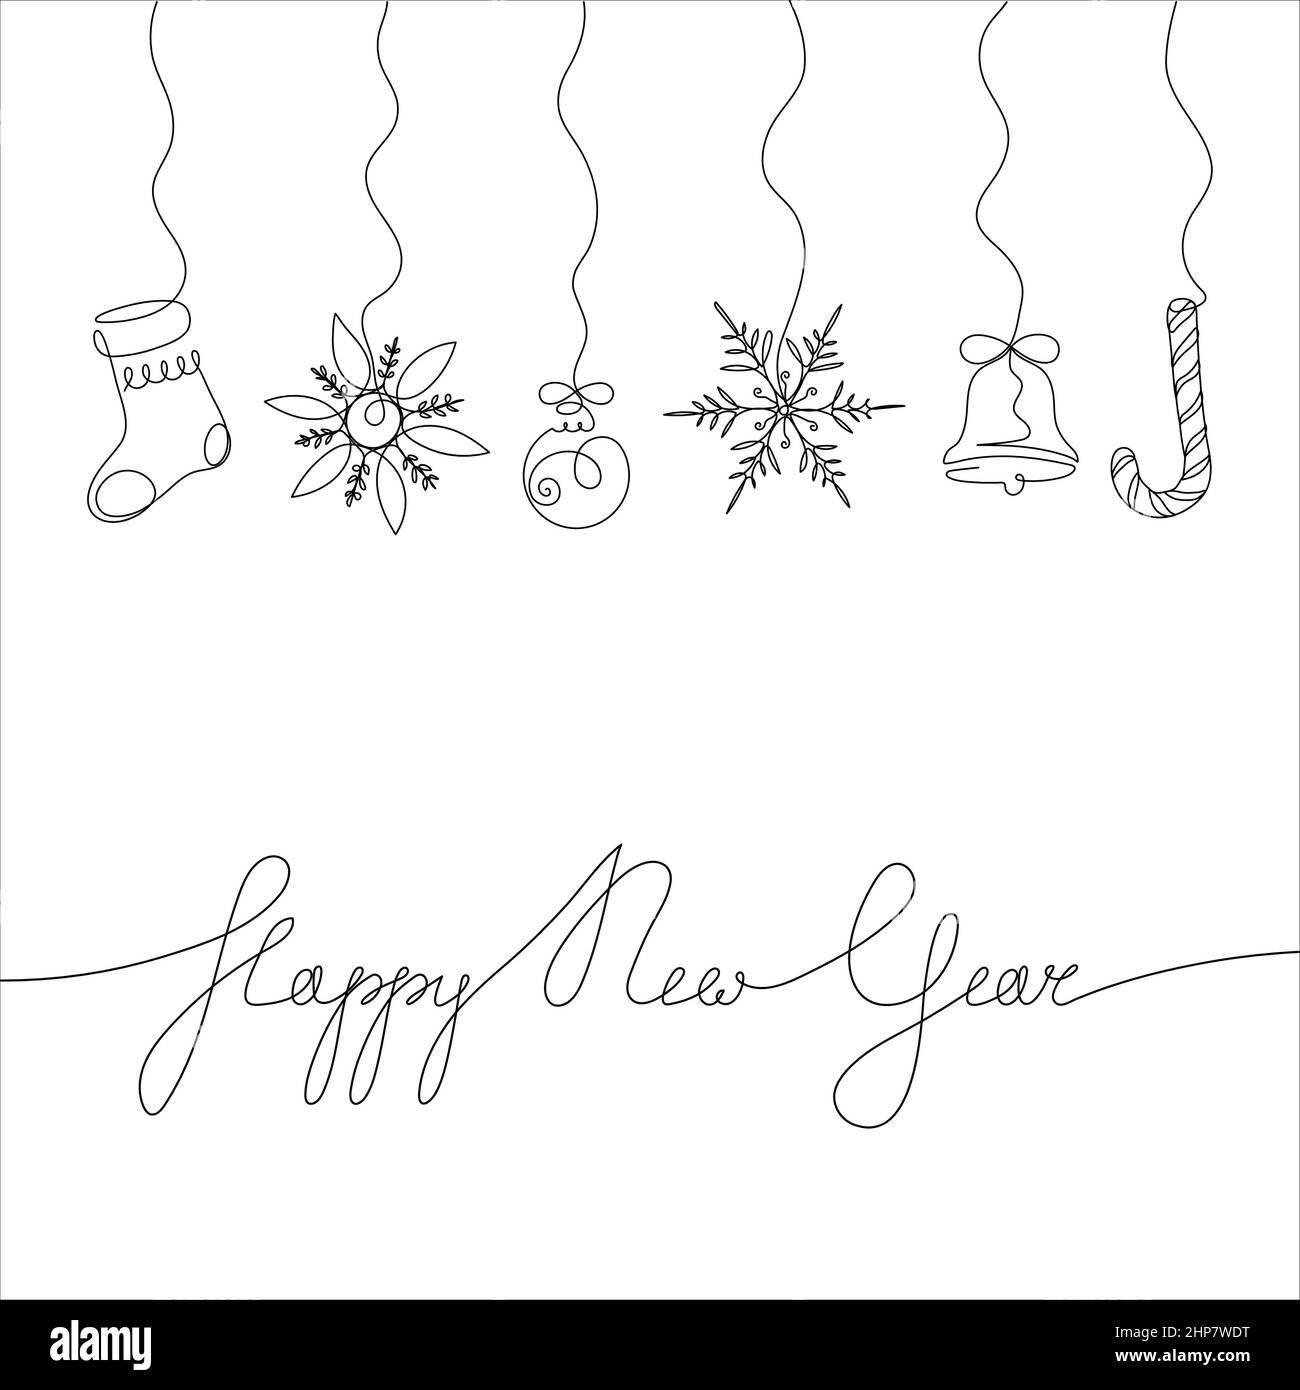 Dessin continu d'une ligne des flocons de neige, chaussettes, ballons, cloches, sucettes et lettres « Happy New Year » du nouvel an. Concept de célébration du nouvel an isolé sur fond blanc. Illustration de Vecteur